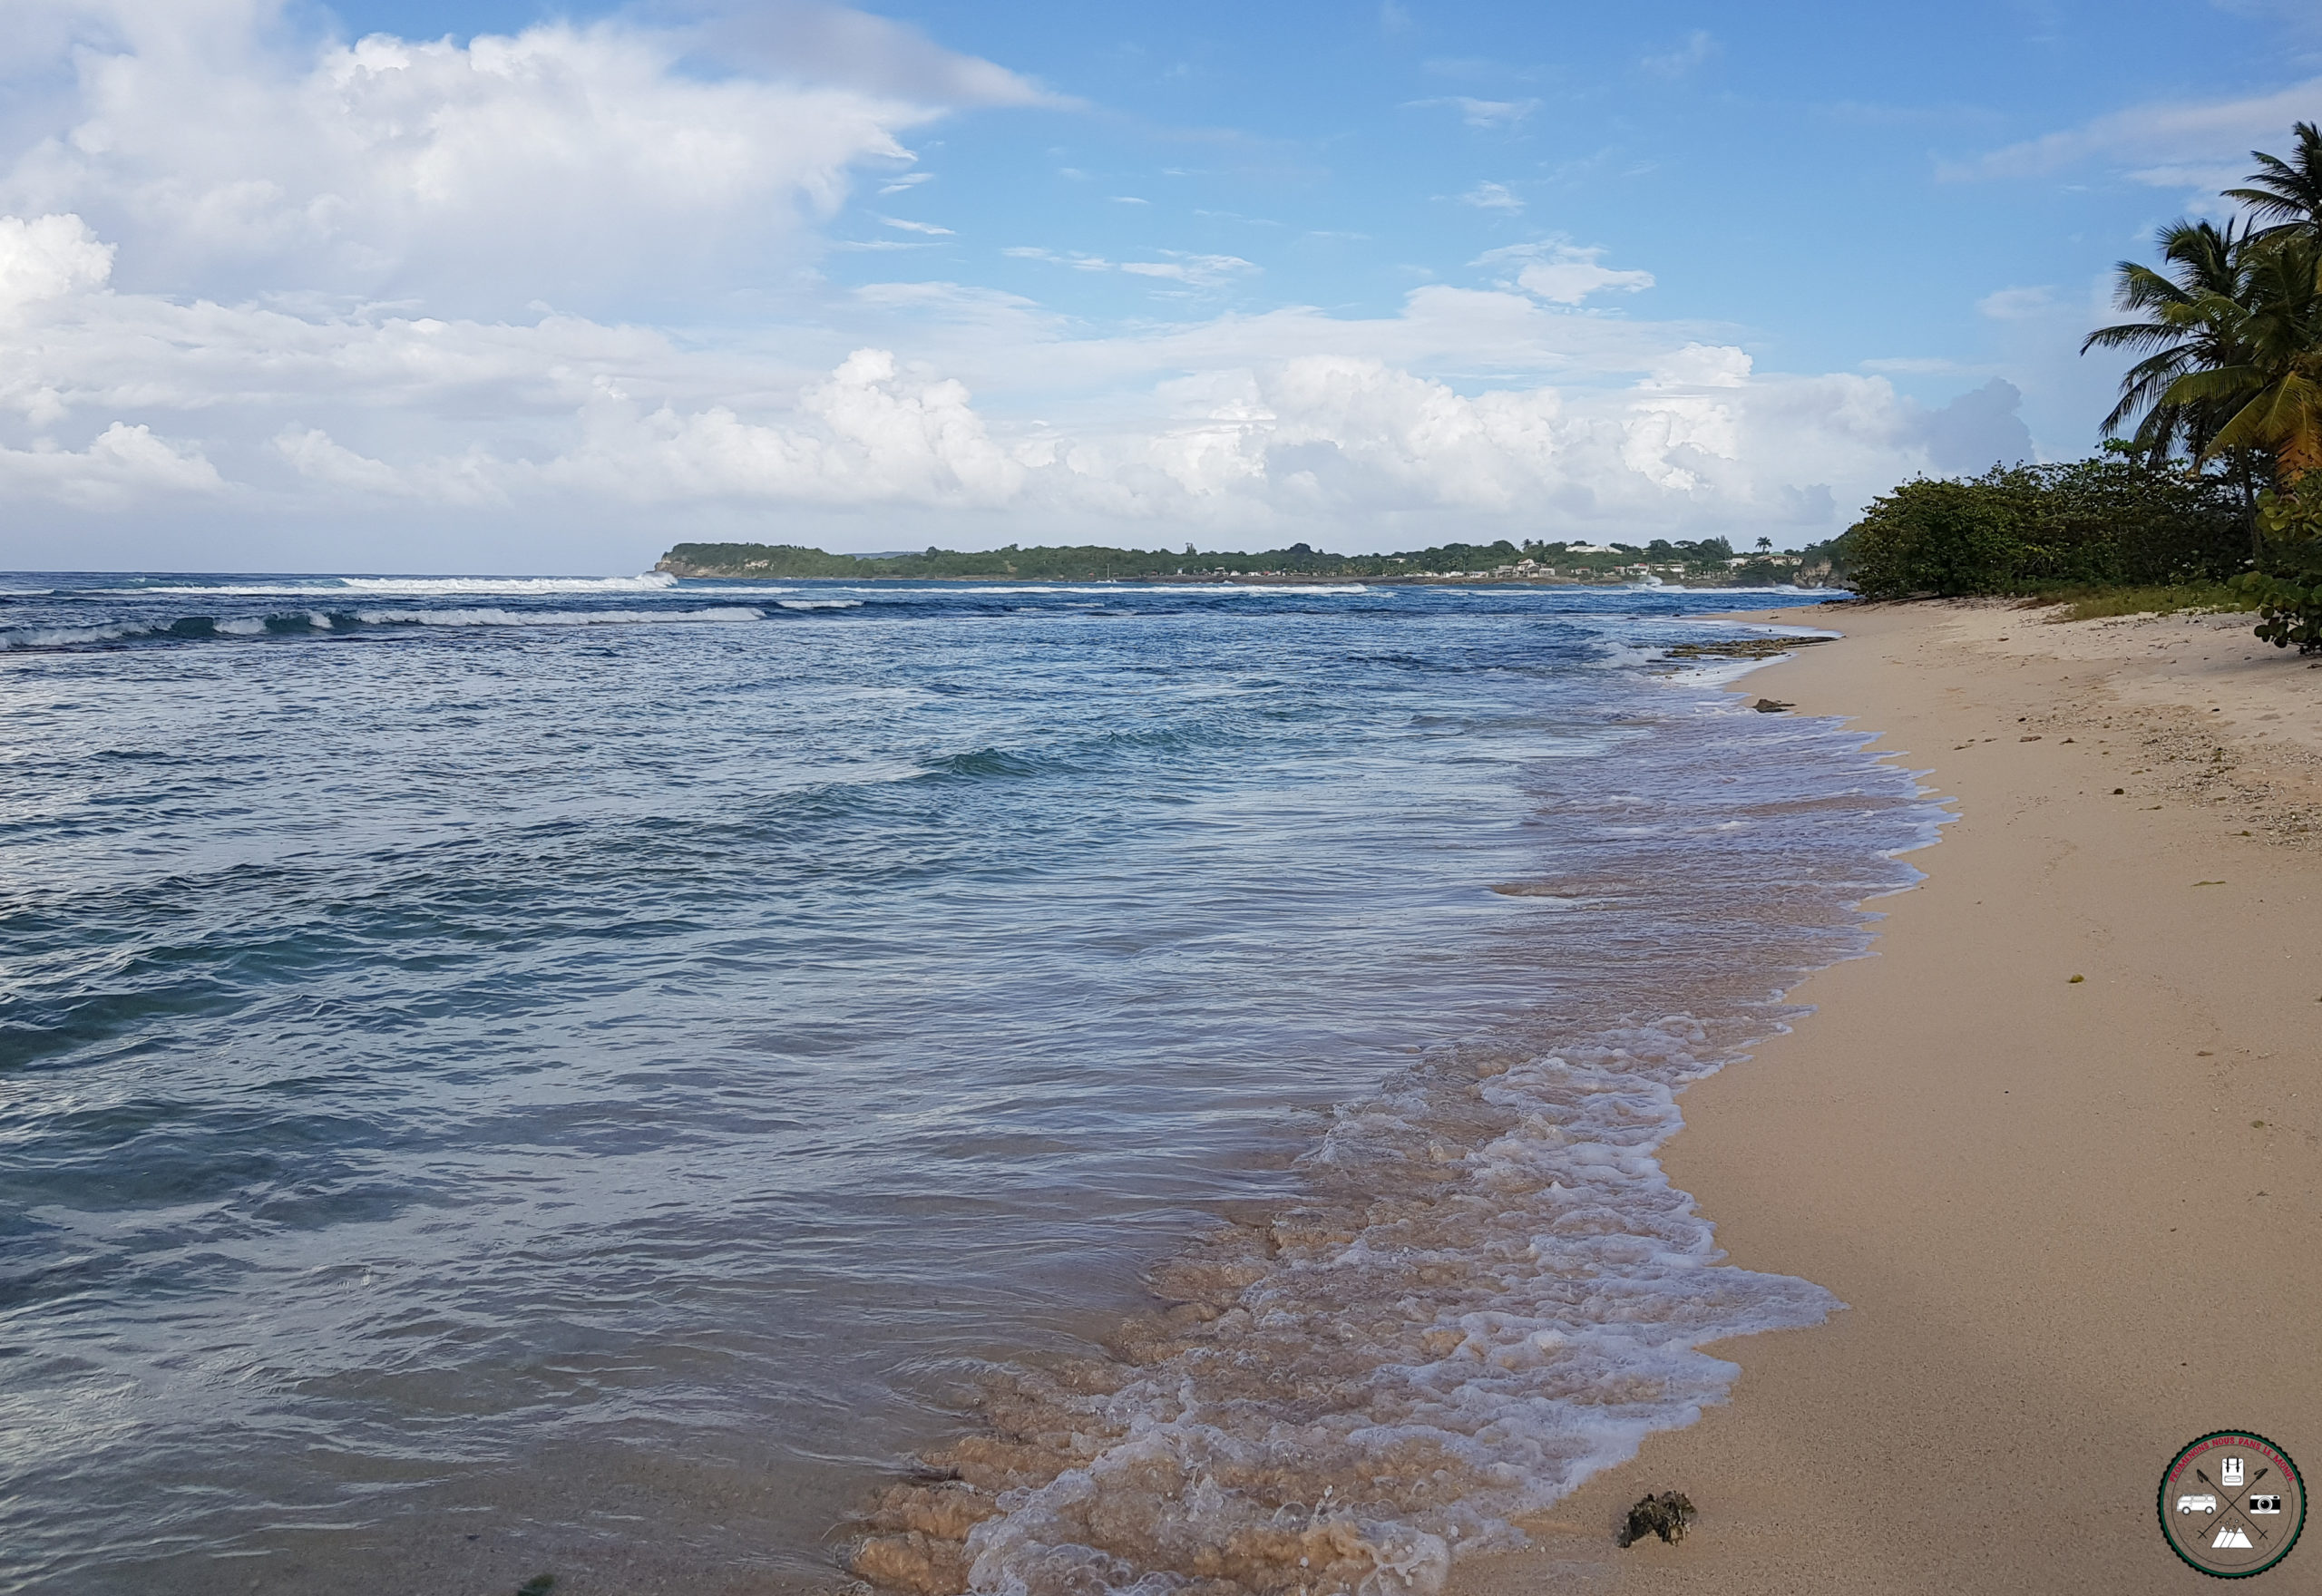 Voyages de 15 jours en Guadeloupe, îles Petite Terre